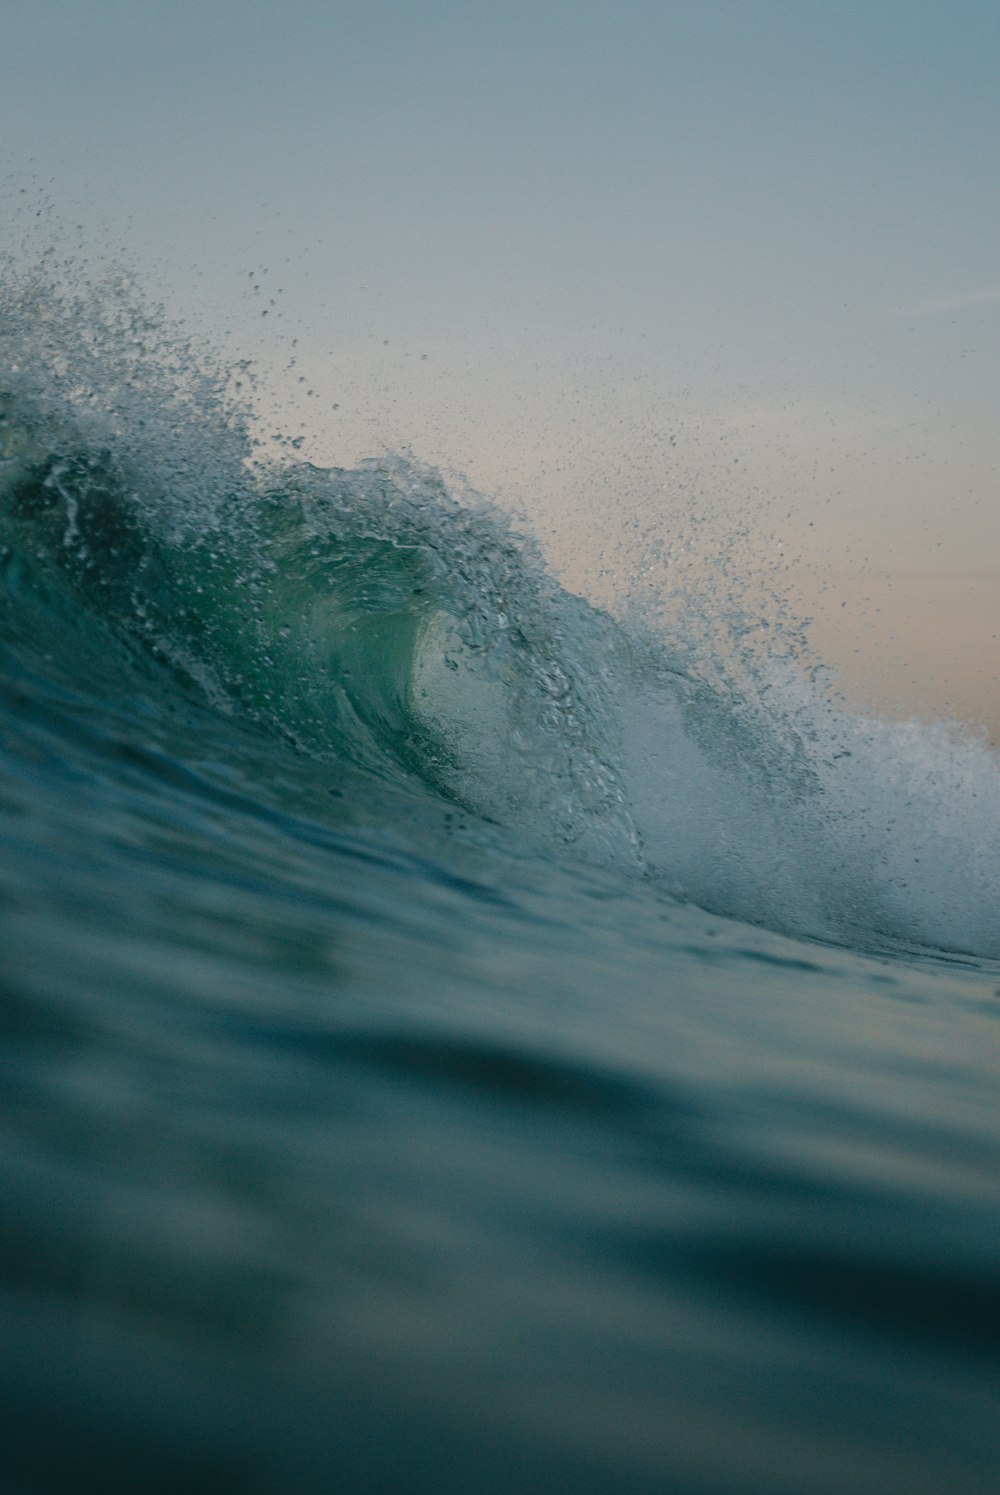 uma pessoa surfando uma onda em cima de uma prancha de surf